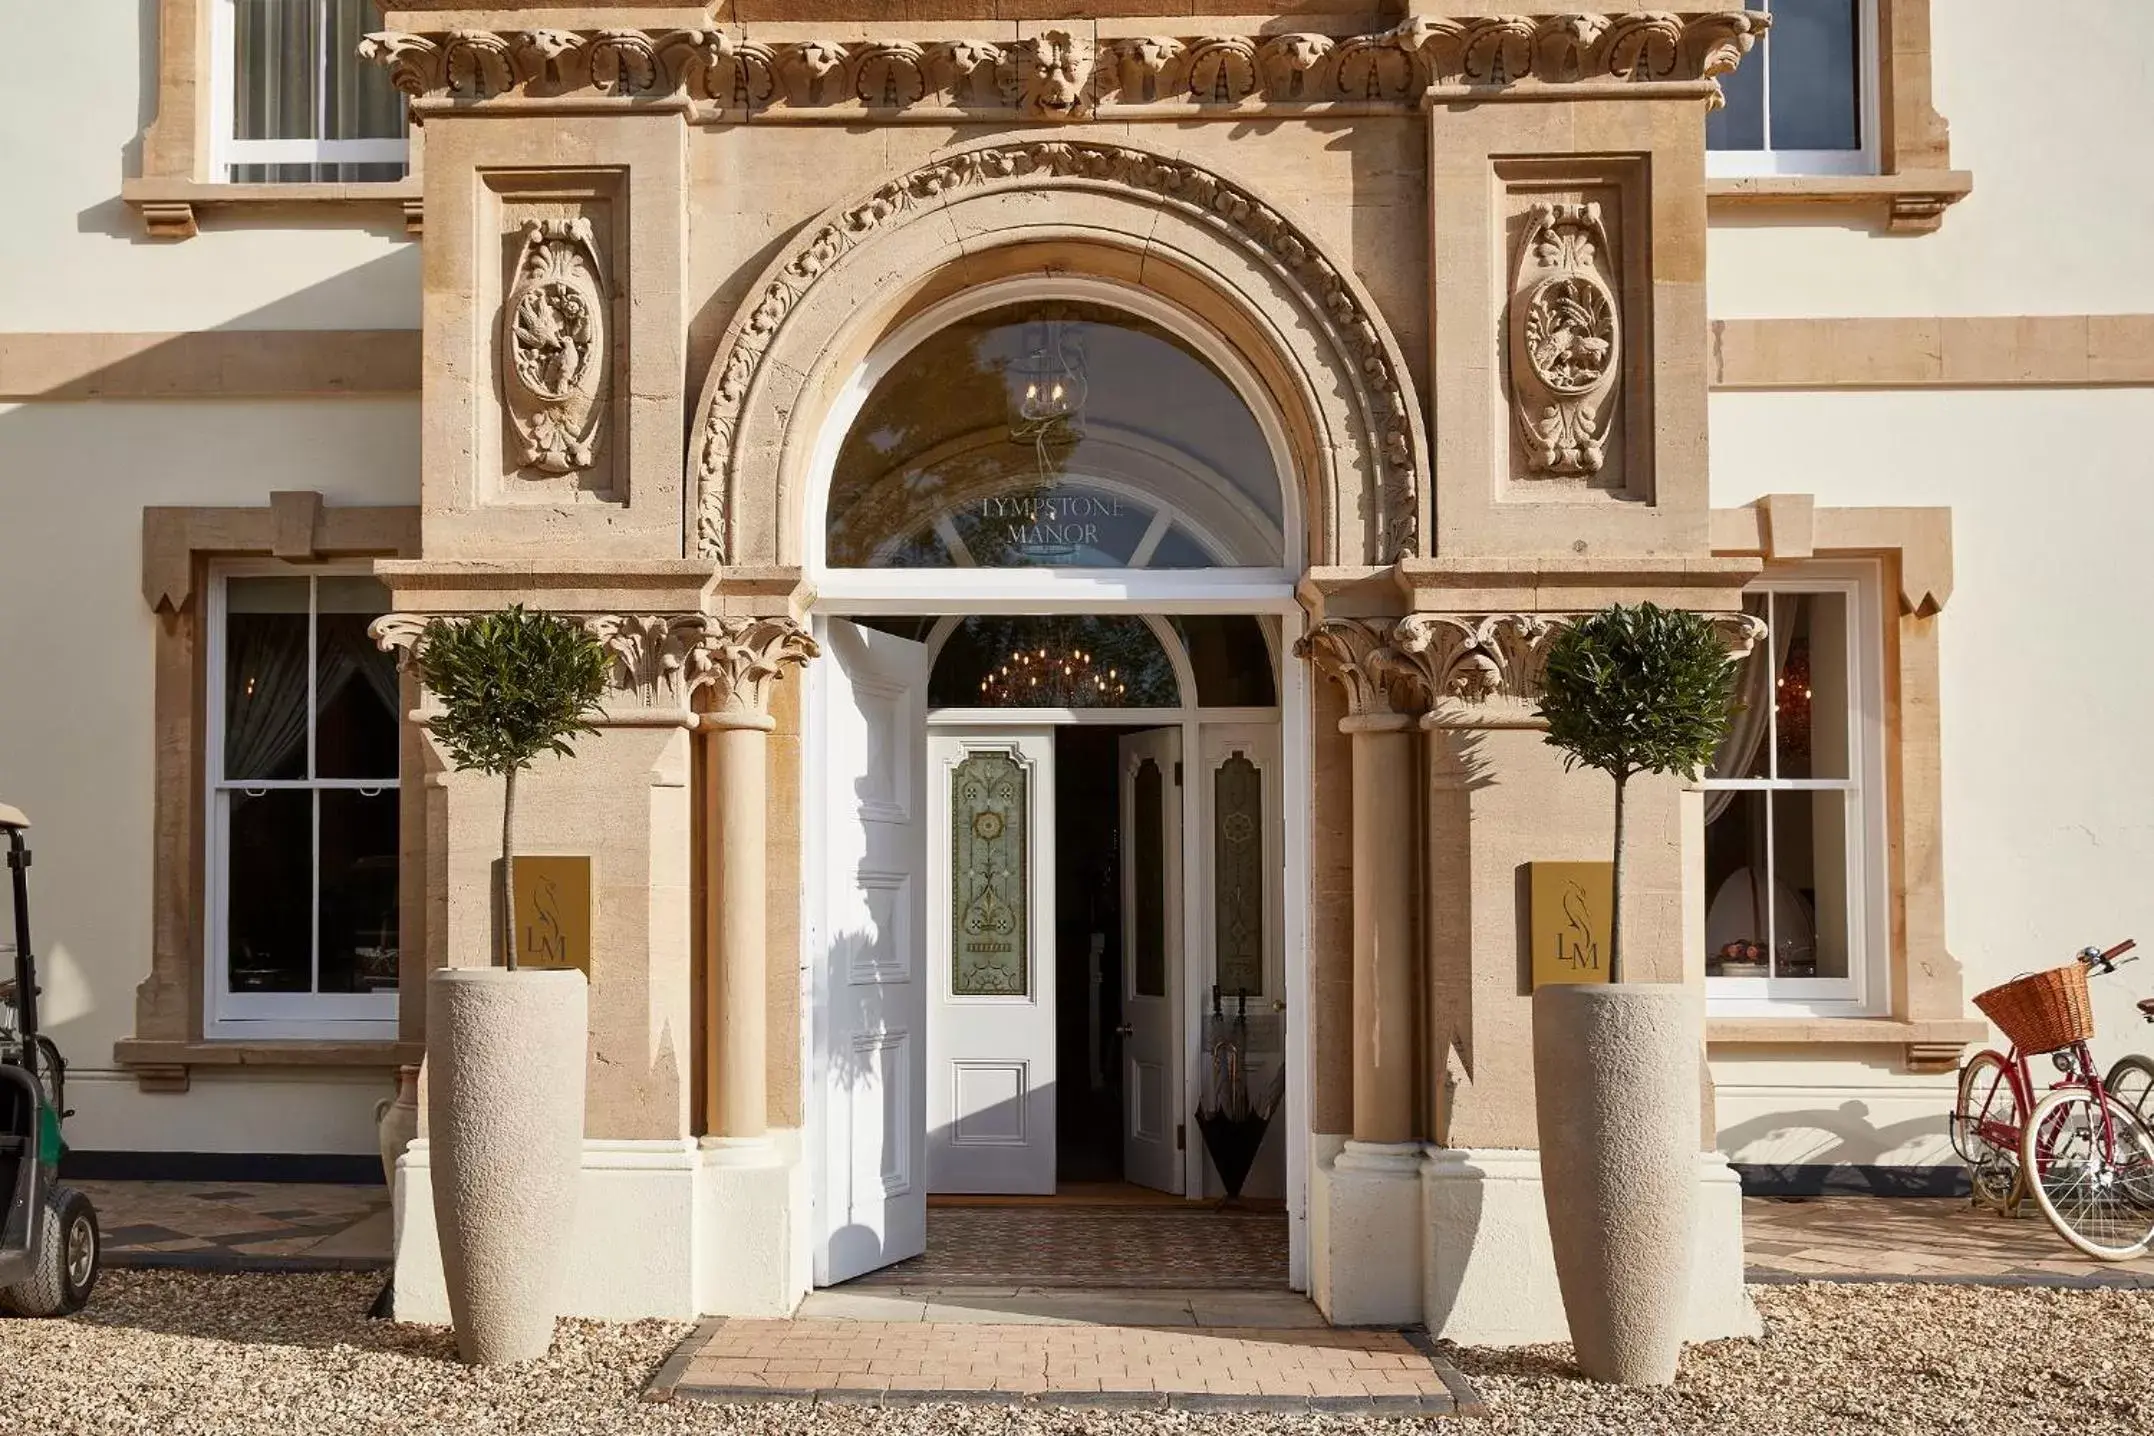 Facade/Entrance in Lympstone Manor Hotel